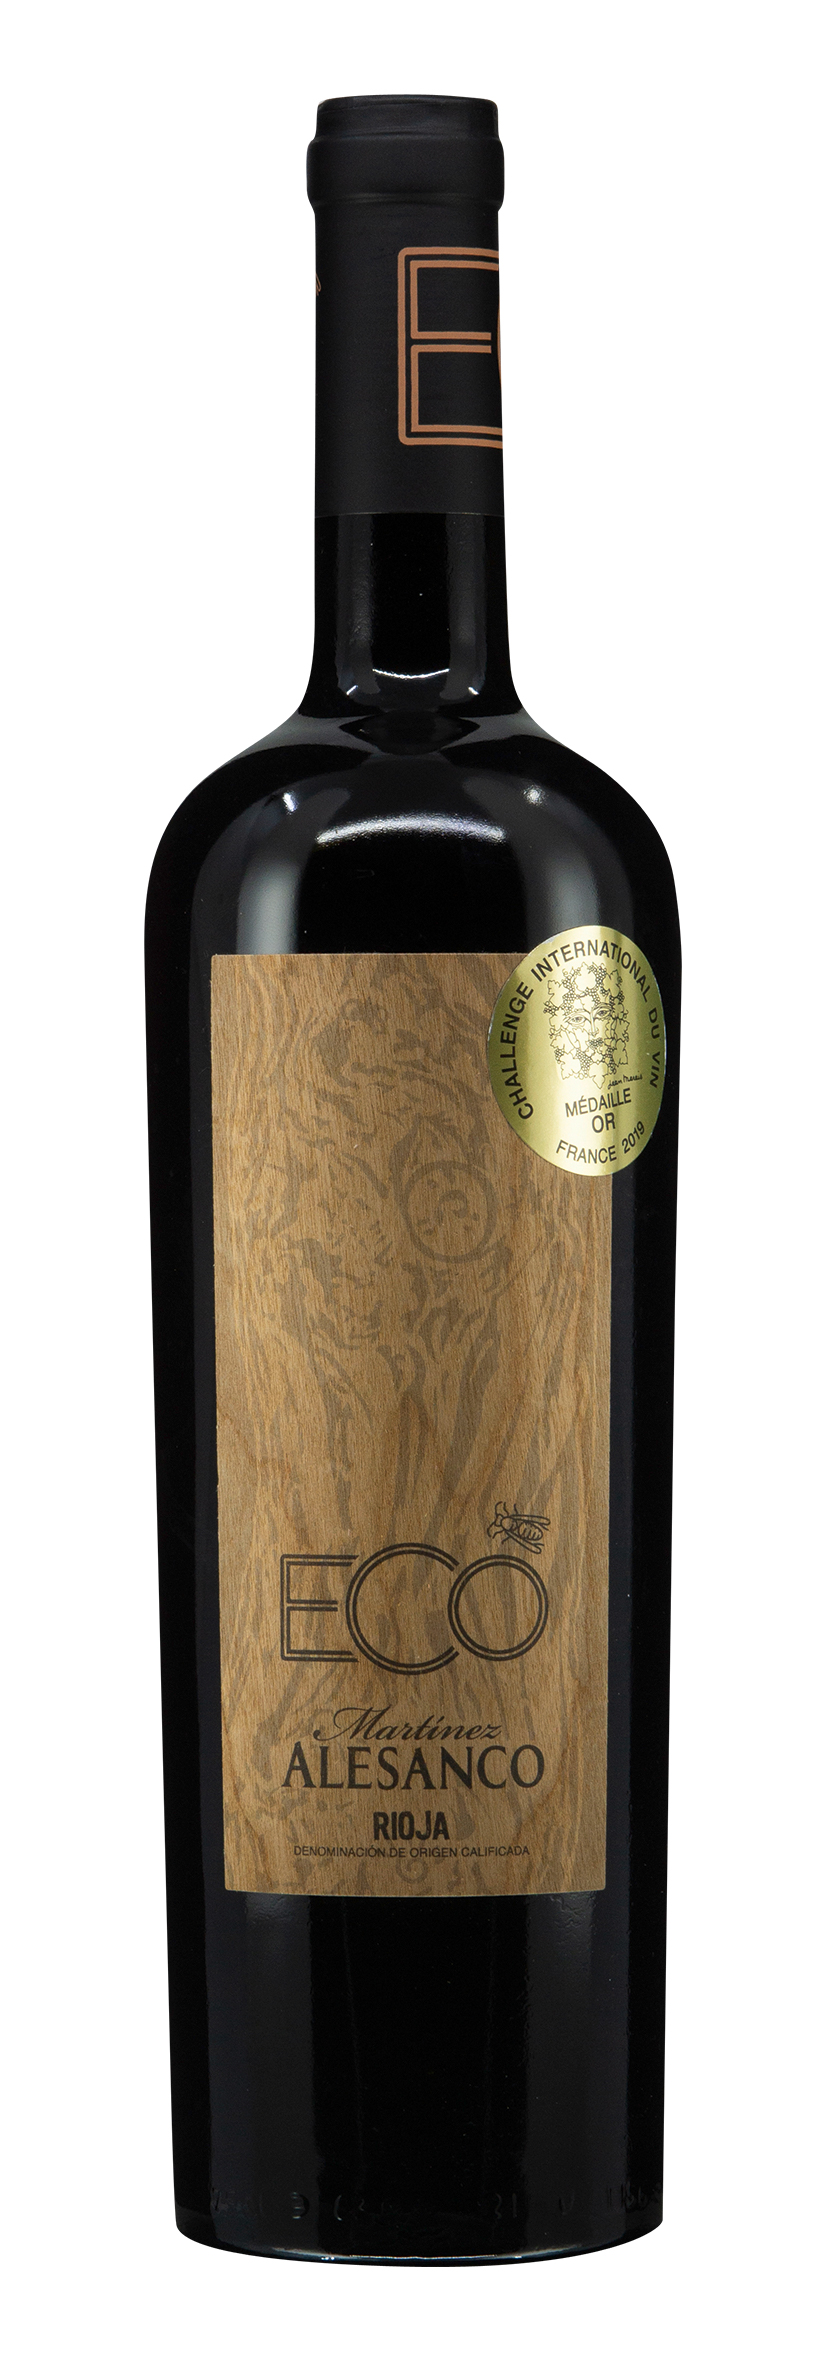 Rioja DOCa Eco 2016